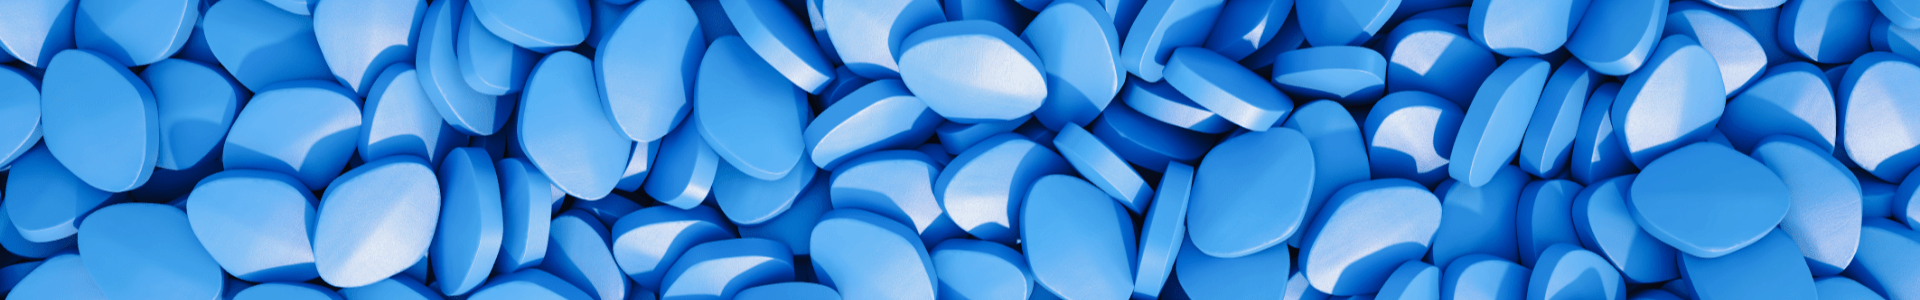 Blue Viagra Pills